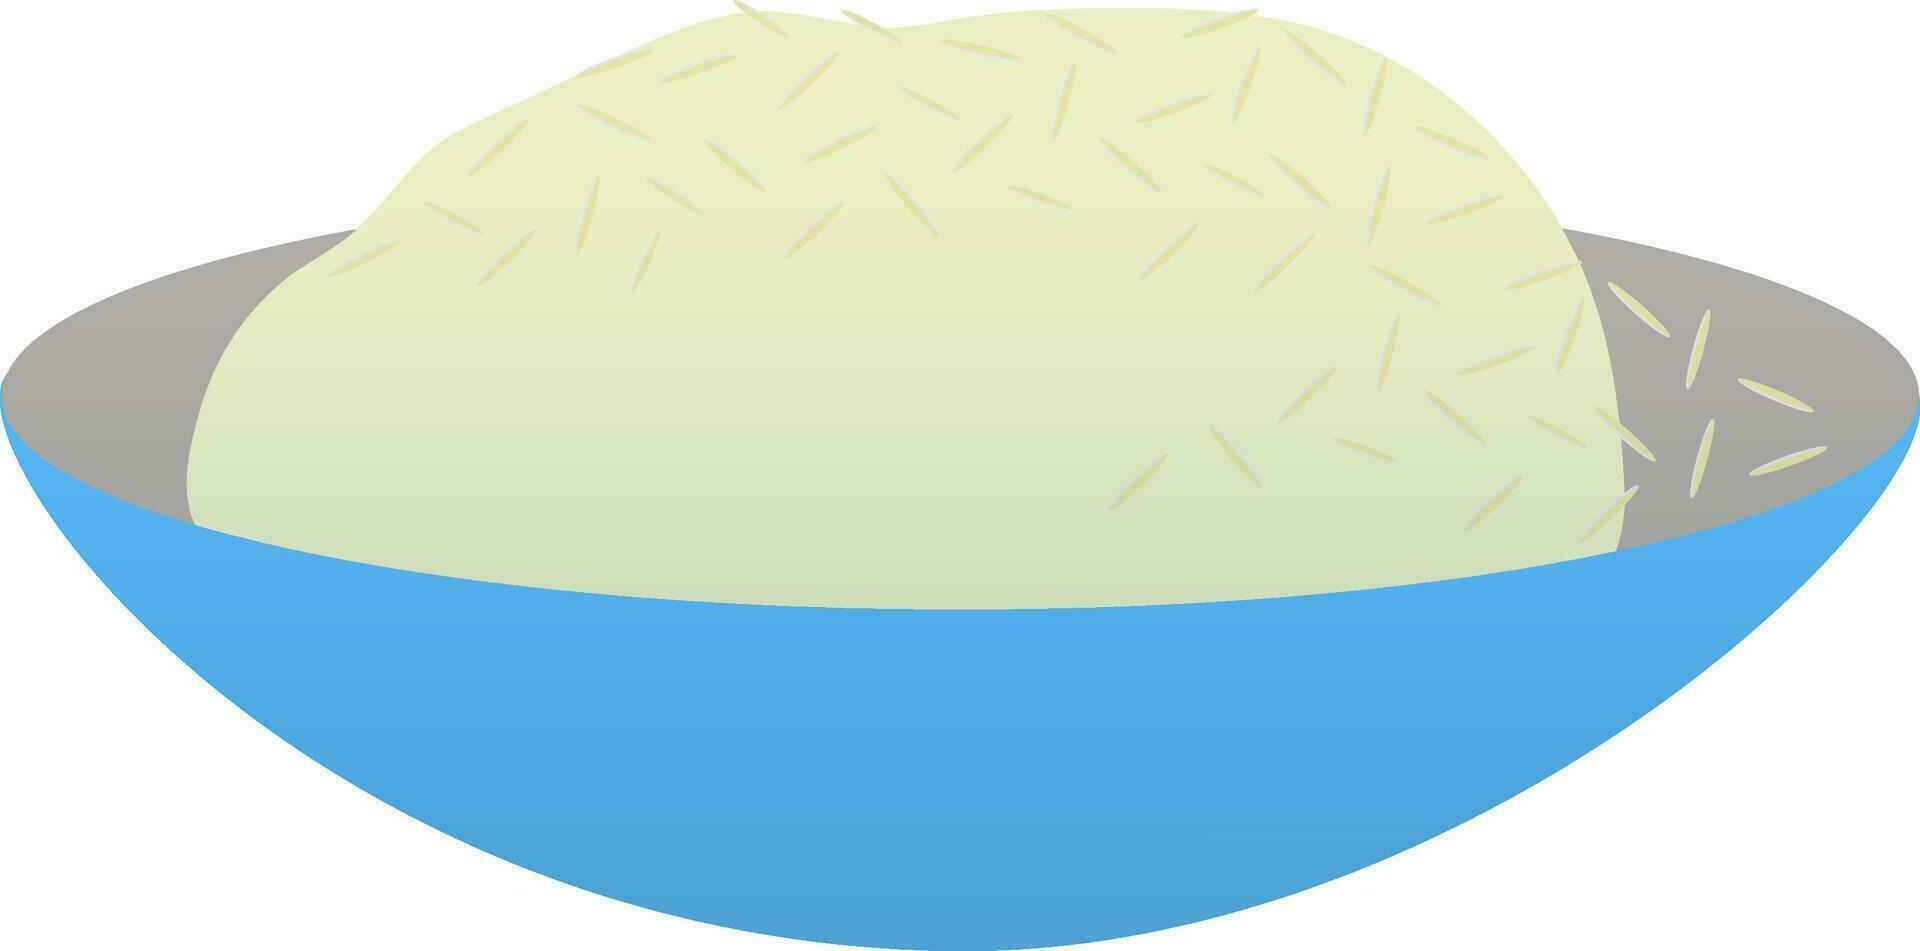 ris i blå skål på vit bakgrund. vektor